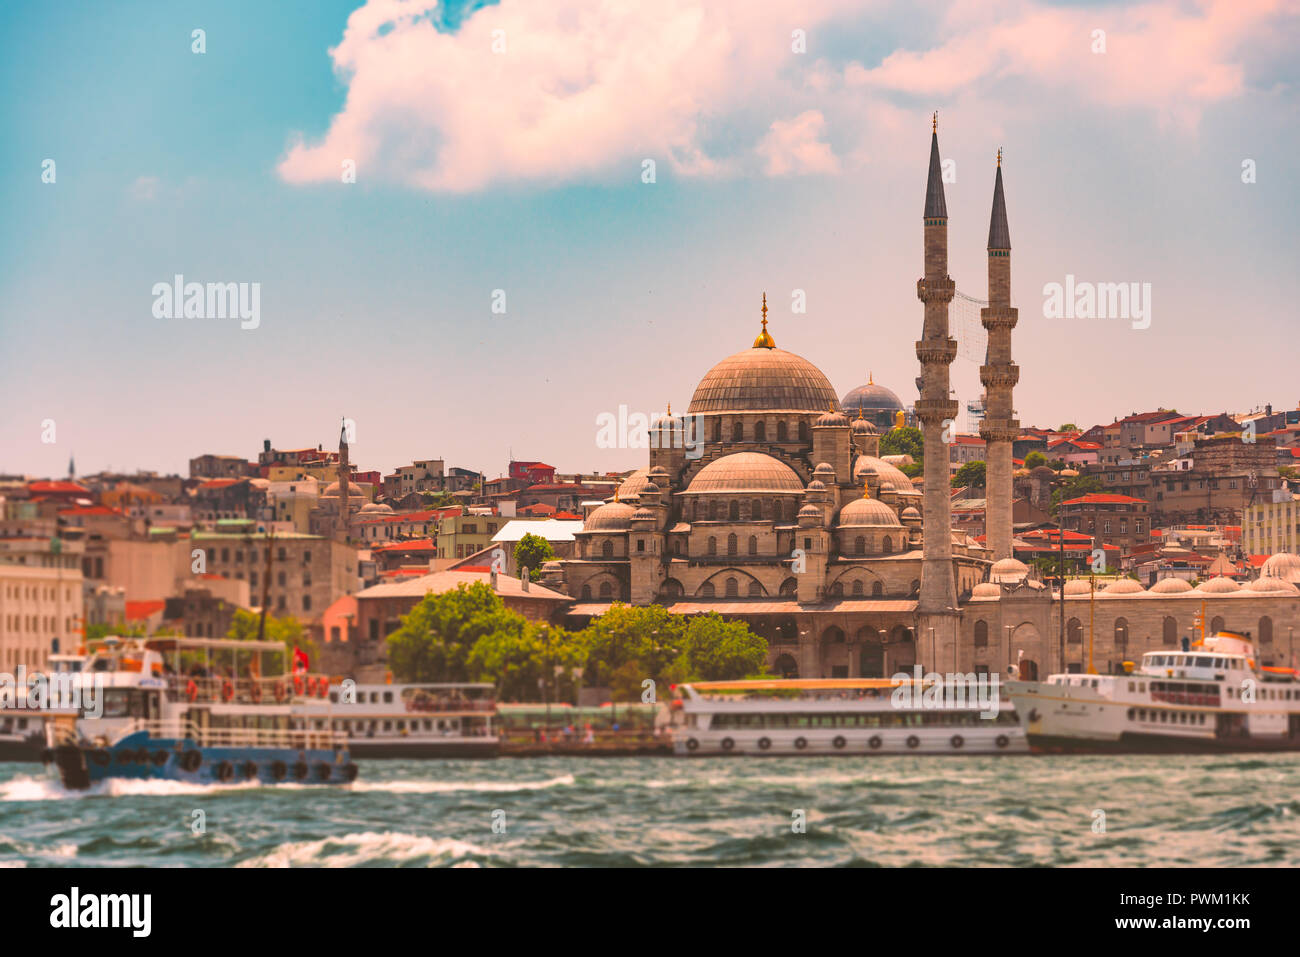 Yeni Cami Ottoman Imperial Moschee im Viertel Eminönü Istanbul, Türkei. Straße von Bosporus mit Schiffen, die in den Vordergrund und blauen bewölkten Himmel Stockfoto